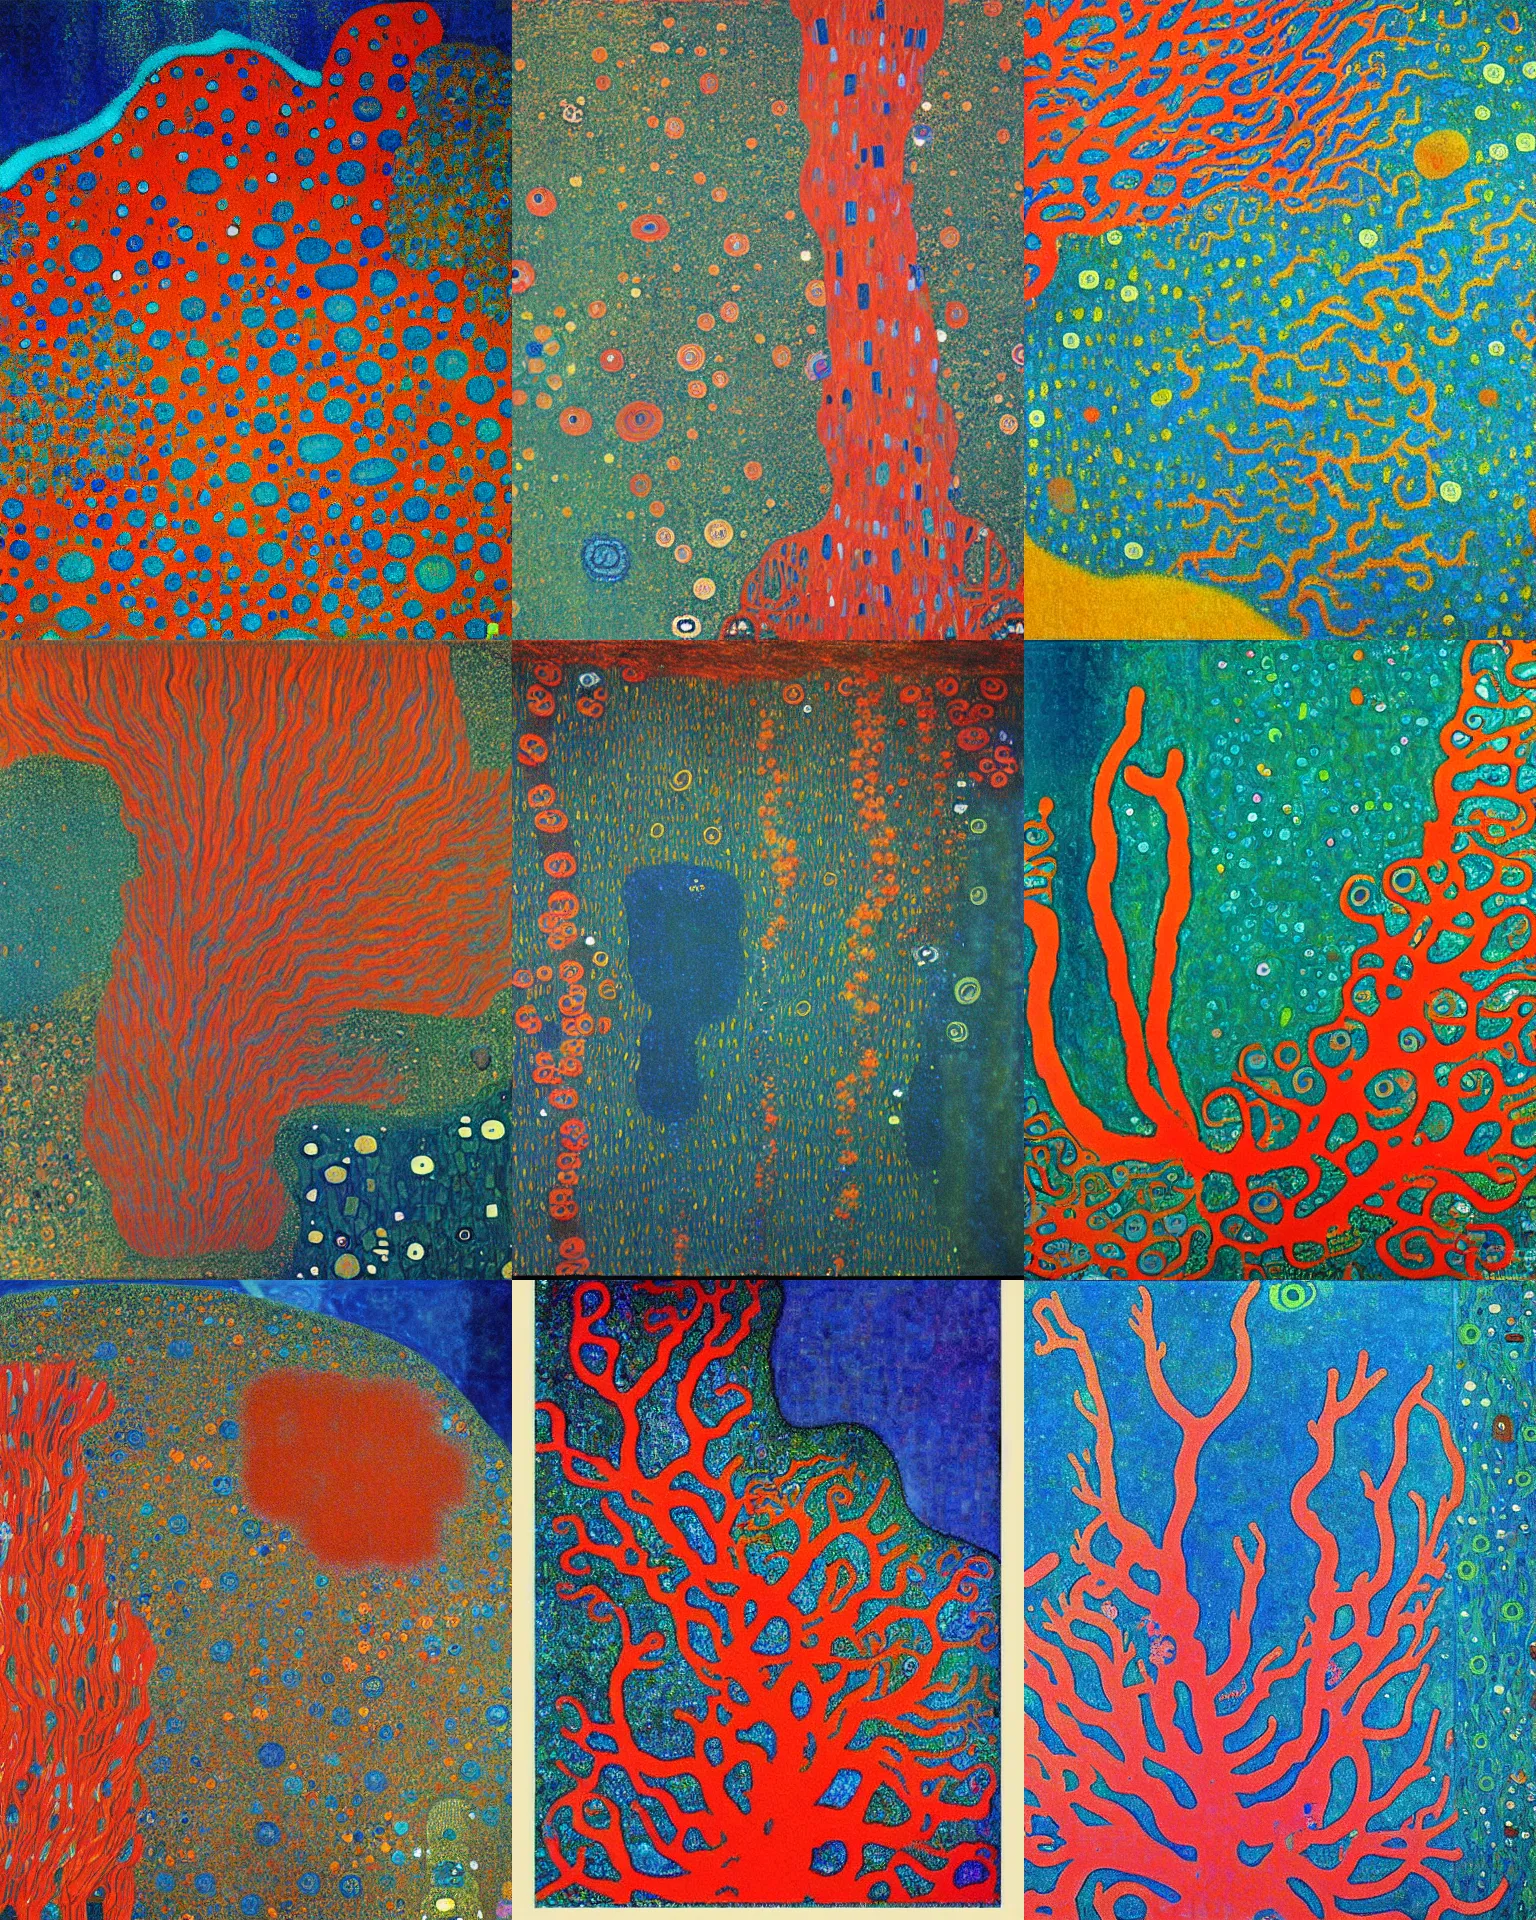 Prompt: A deep sea coral reef painted by Gustav Klimt